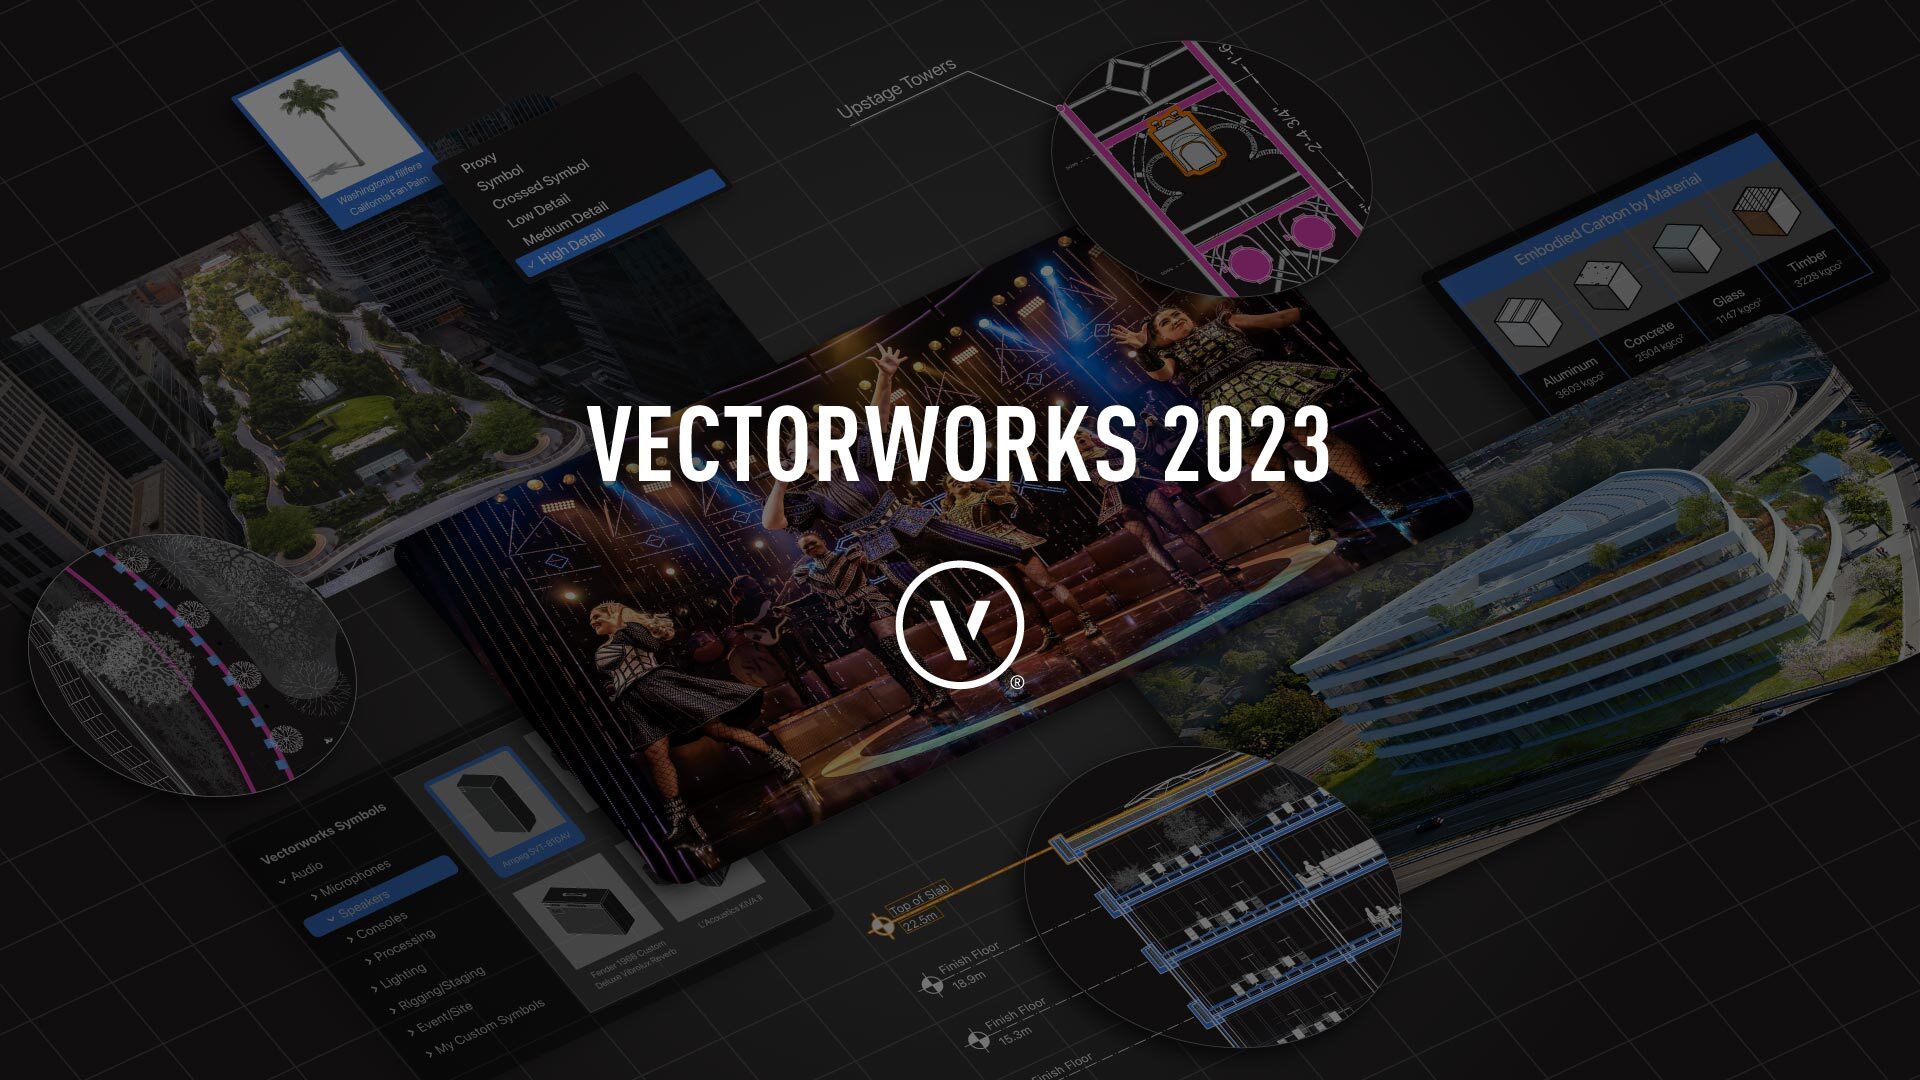 vectorworks 2023 là gì?